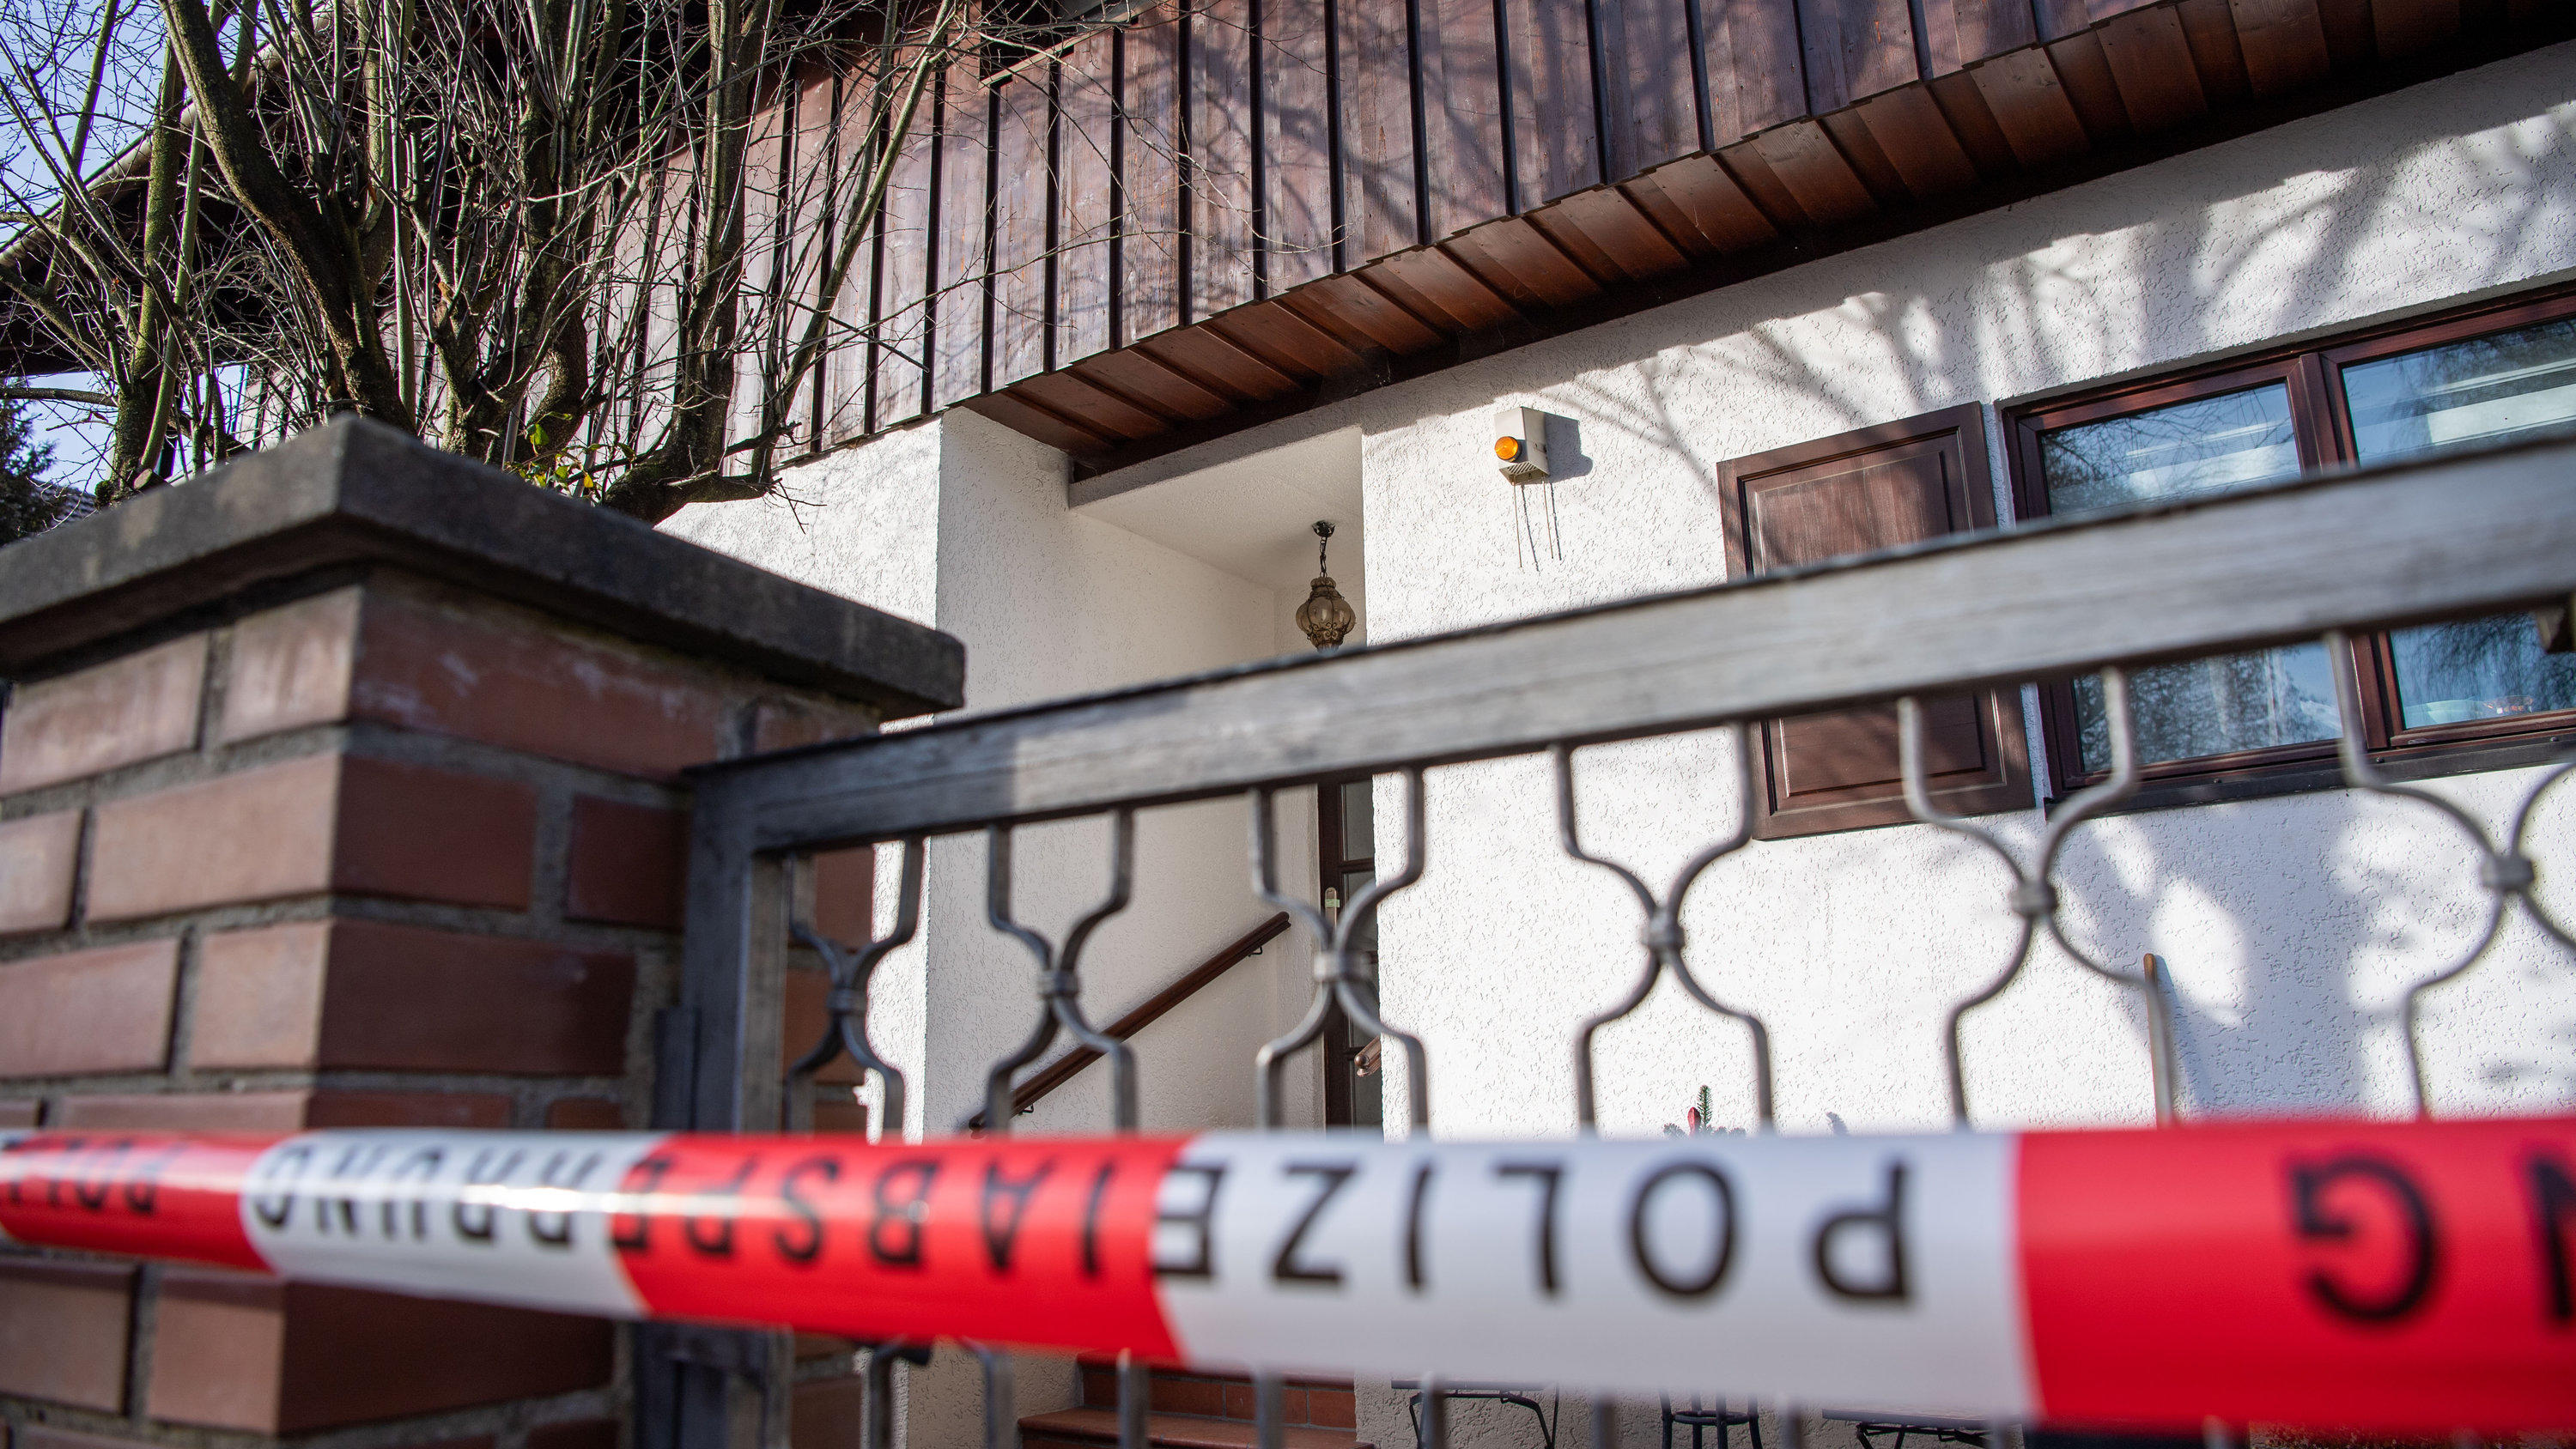 13.01.2020, Bayern, Starnberg: Polizei-Absperrband ist vor einem Wohnhaus zu sehen. In der Nacht wurden drei tote Personen in dem Haus gefunden. Nach zunächst nicht gesicherten Erkenntnissen handle es sich dabei um das Ehepaar, das in dem Haus lebte,